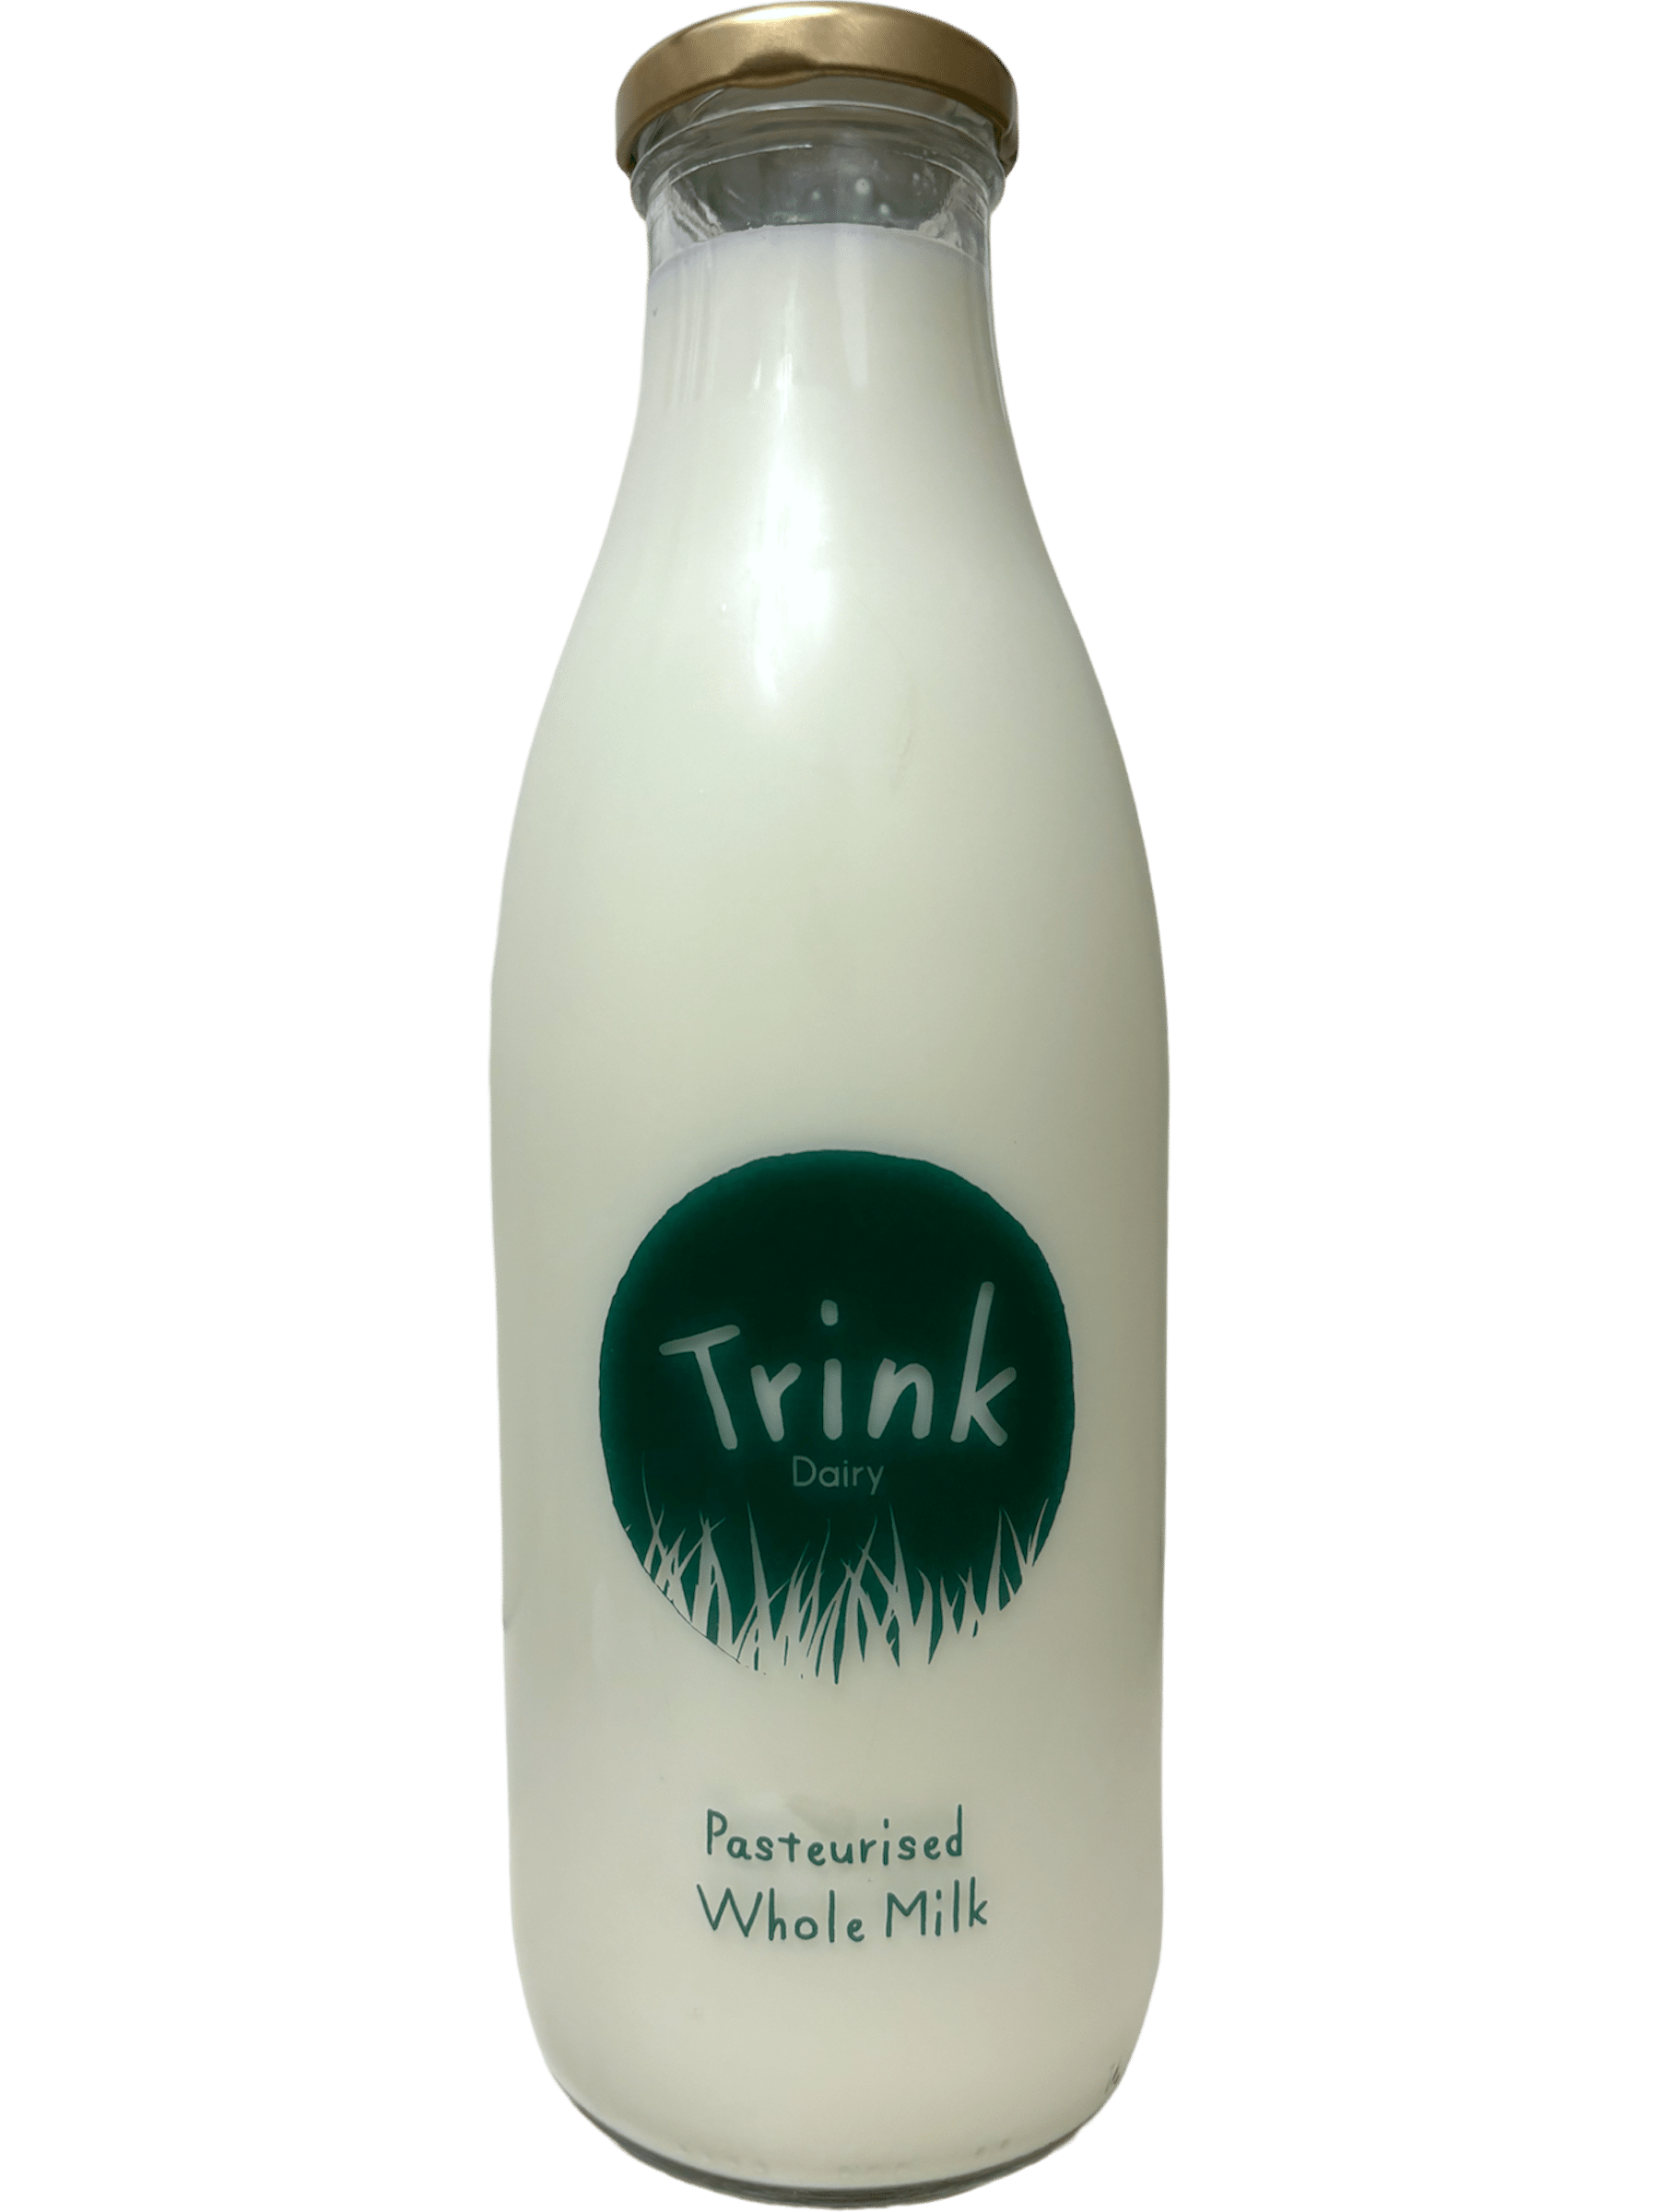 Trink Dairy - www.Kelis.info #KelisTheBottleBank